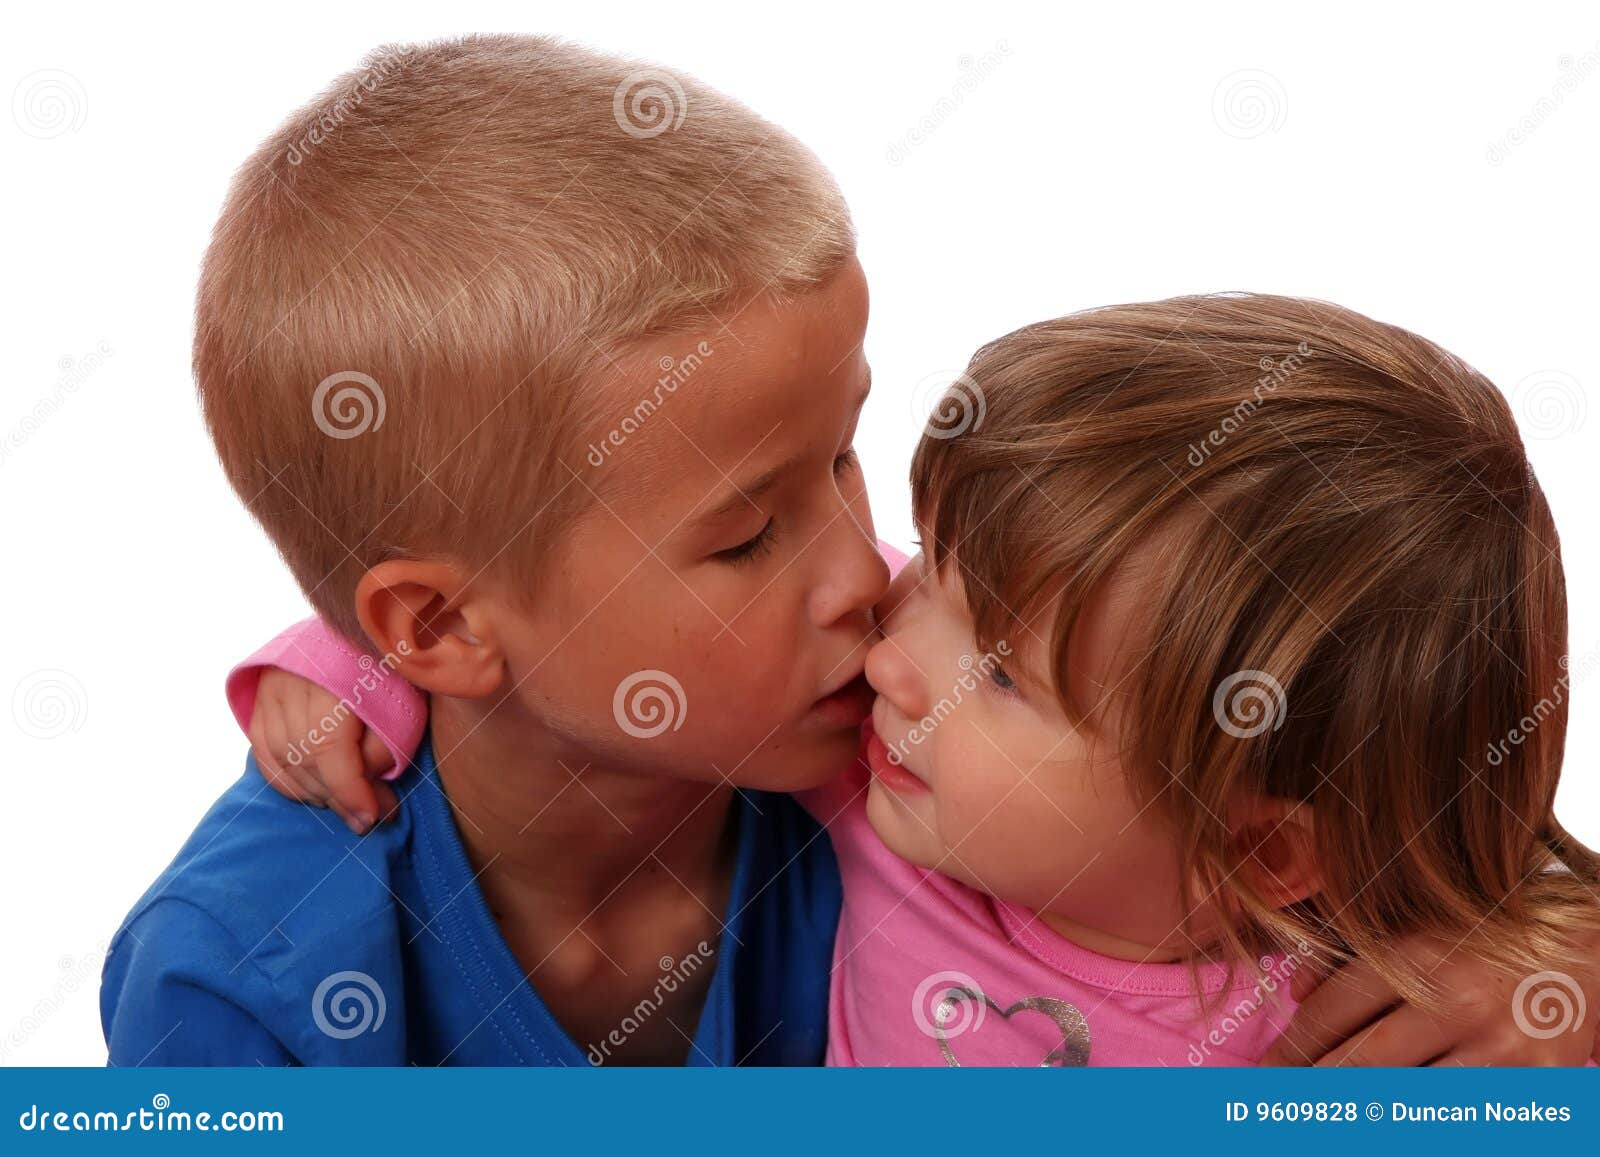 сестра целует член брата фото 27